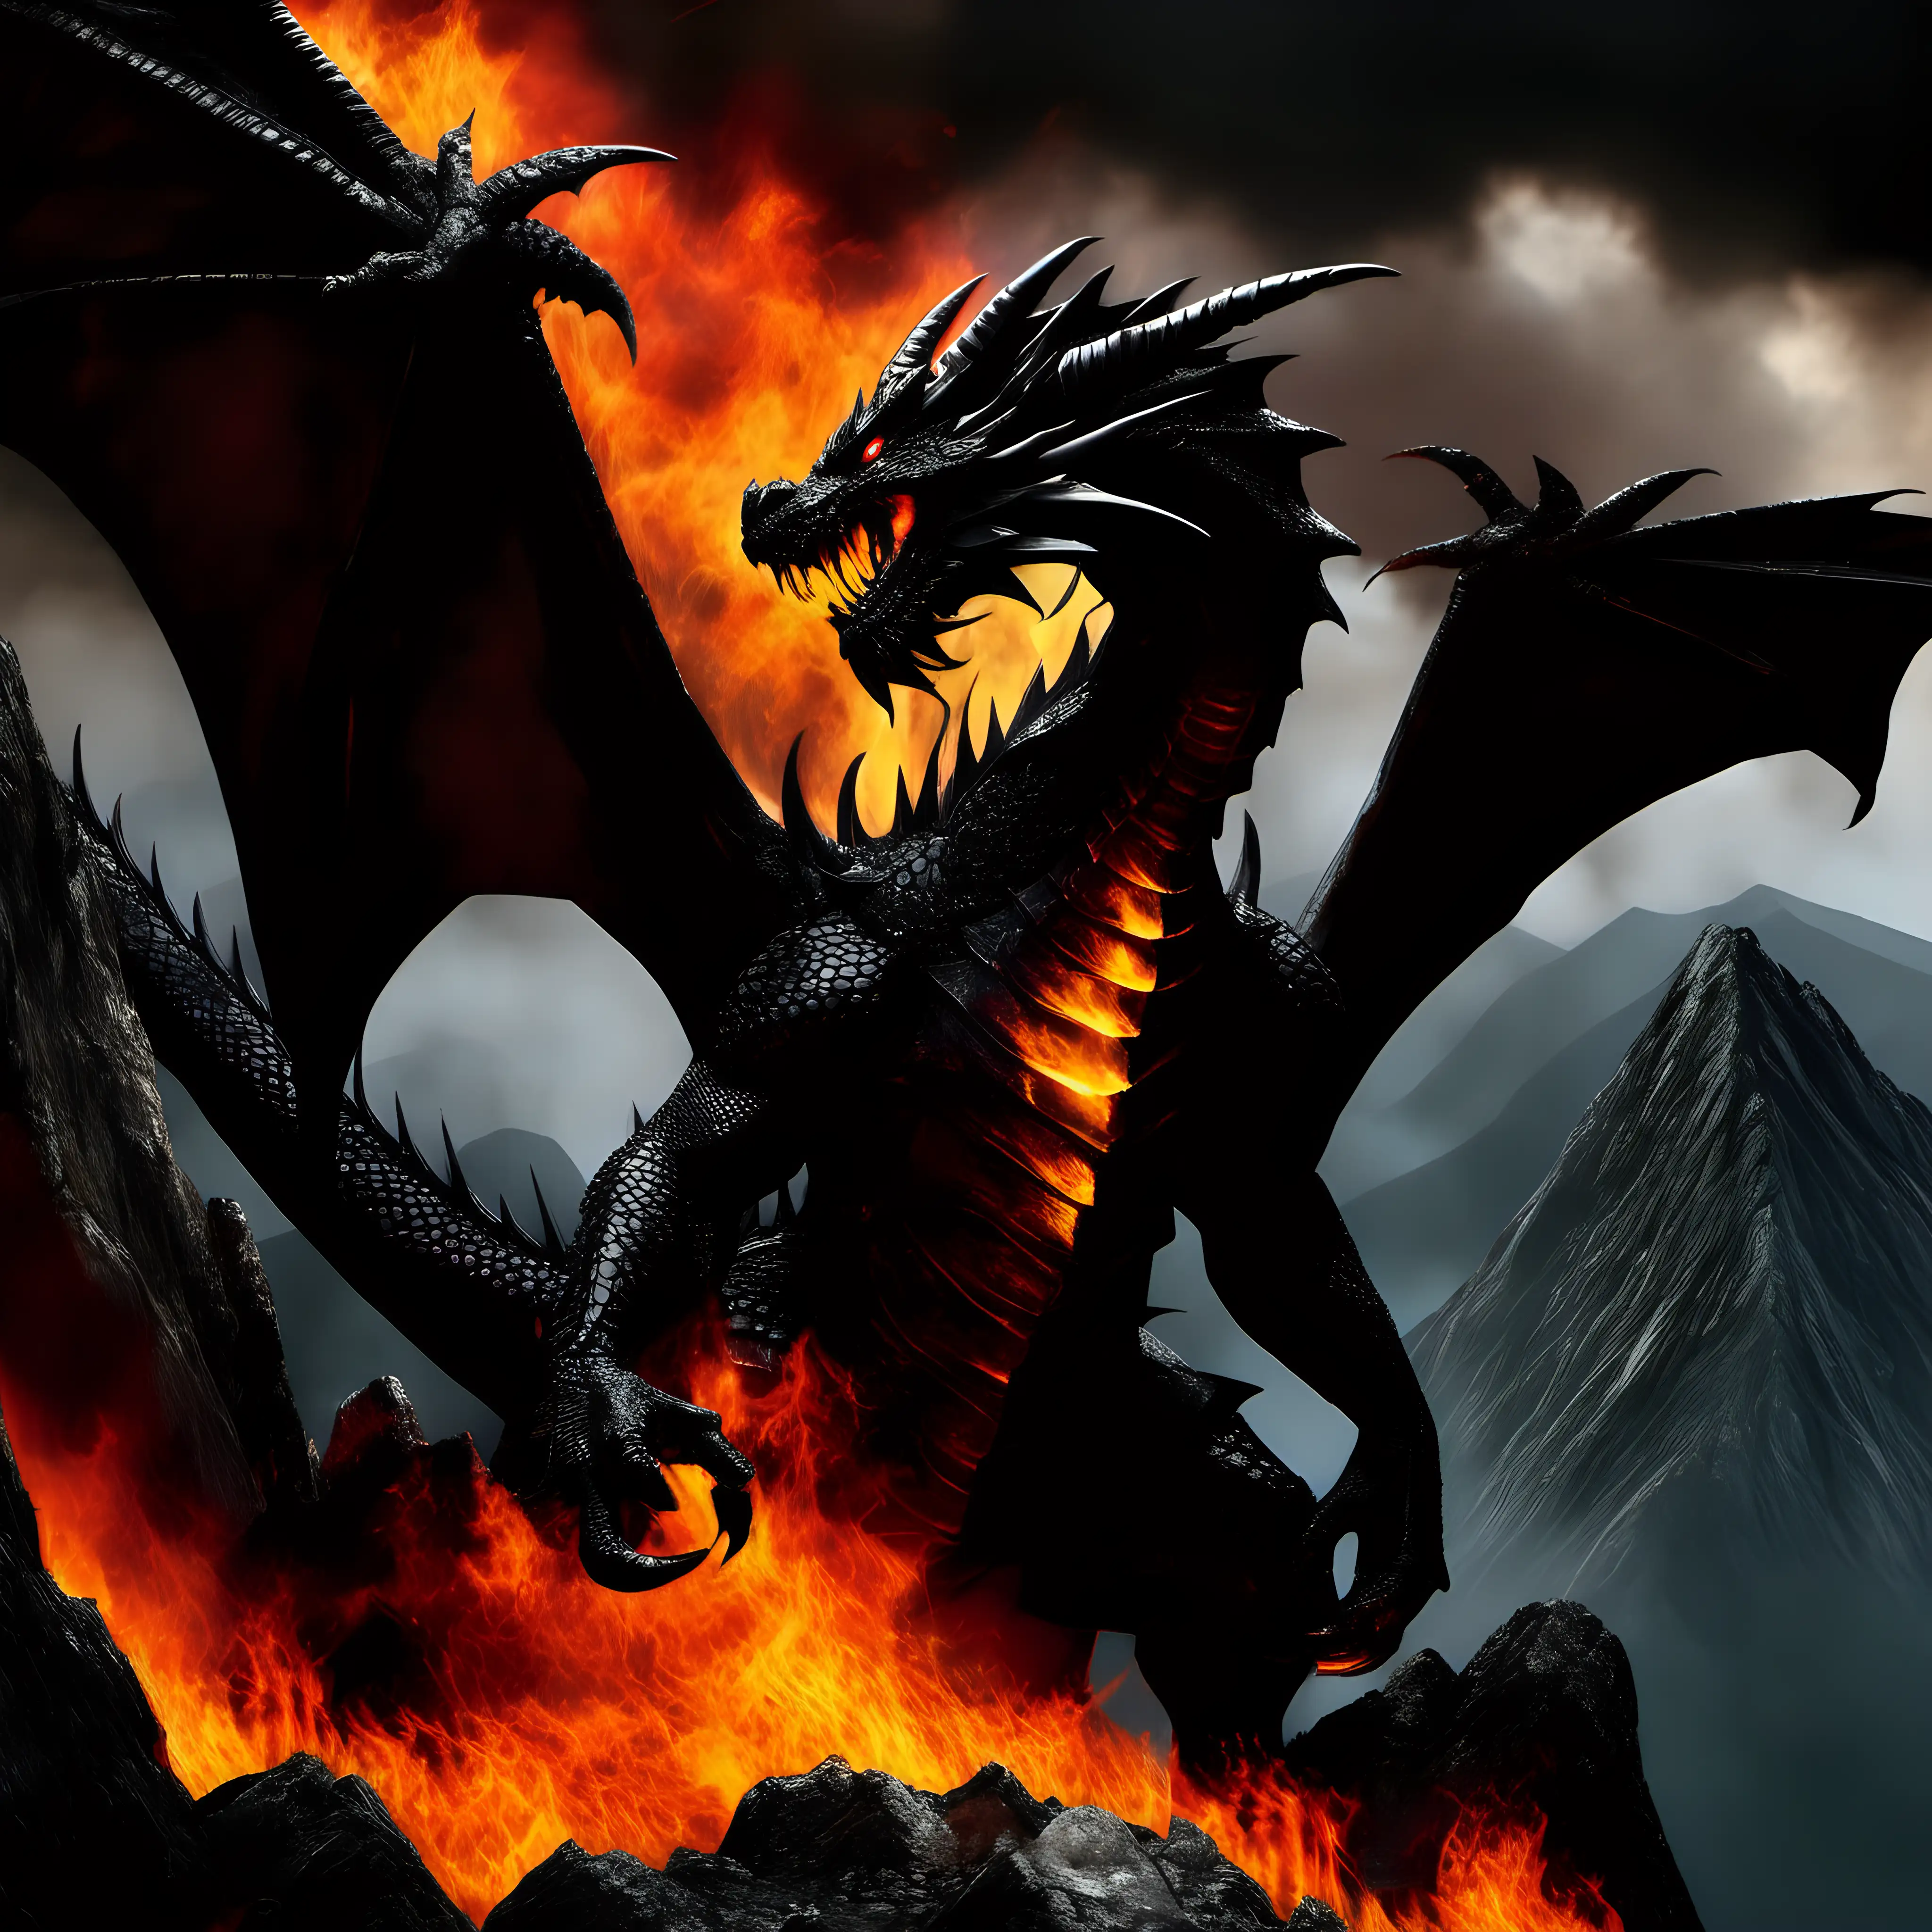 Majestic Black Dragon Roaring Amidst Fiery Mountain Landscape